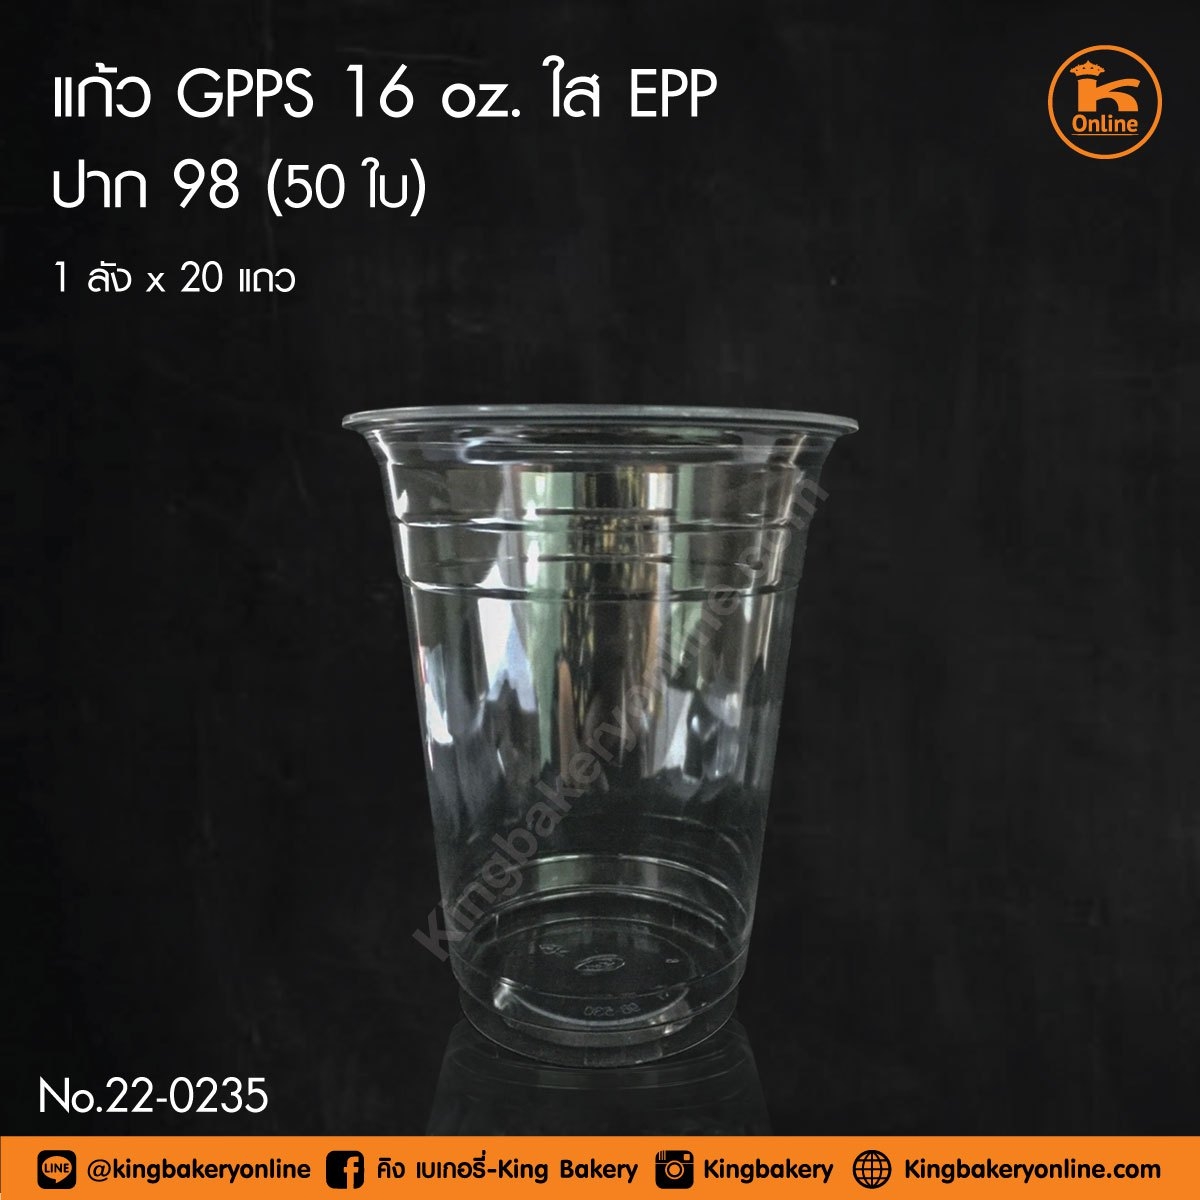 #ยกลัง (ลังx20แถว) แก้ว GPPS 16 oz. ใส EPP ปาก 98 (ลังx20แถว)